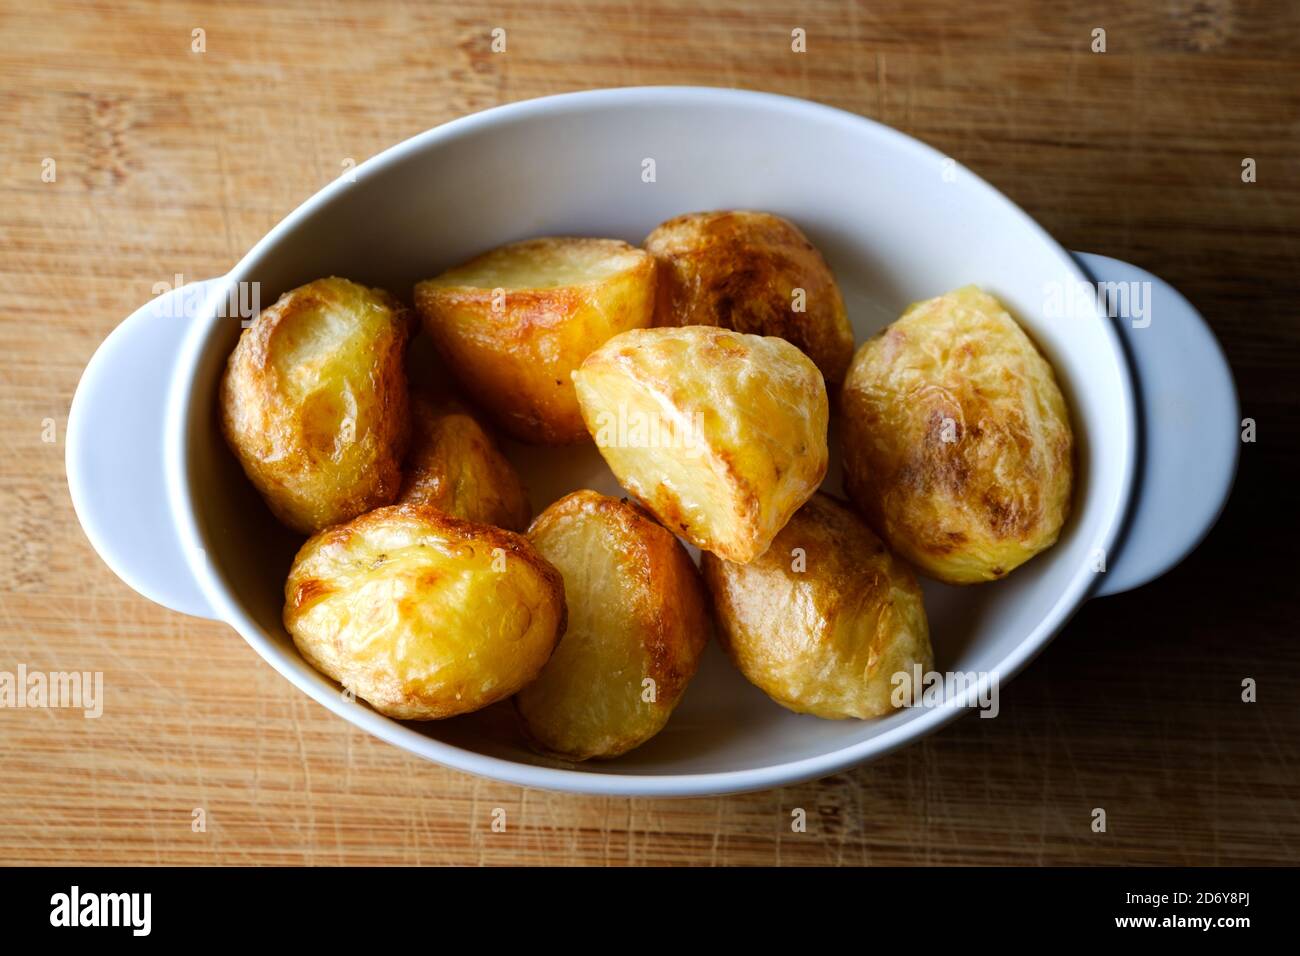 Eine kleine Schüssel mit heißen knusprigen Bratkartoffeln. Die Röster sind frisch aus dem Ofen, gut knusprig und eine leckere Ergänzung zu einem traditionellen Sonntagsbraten Stockfoto